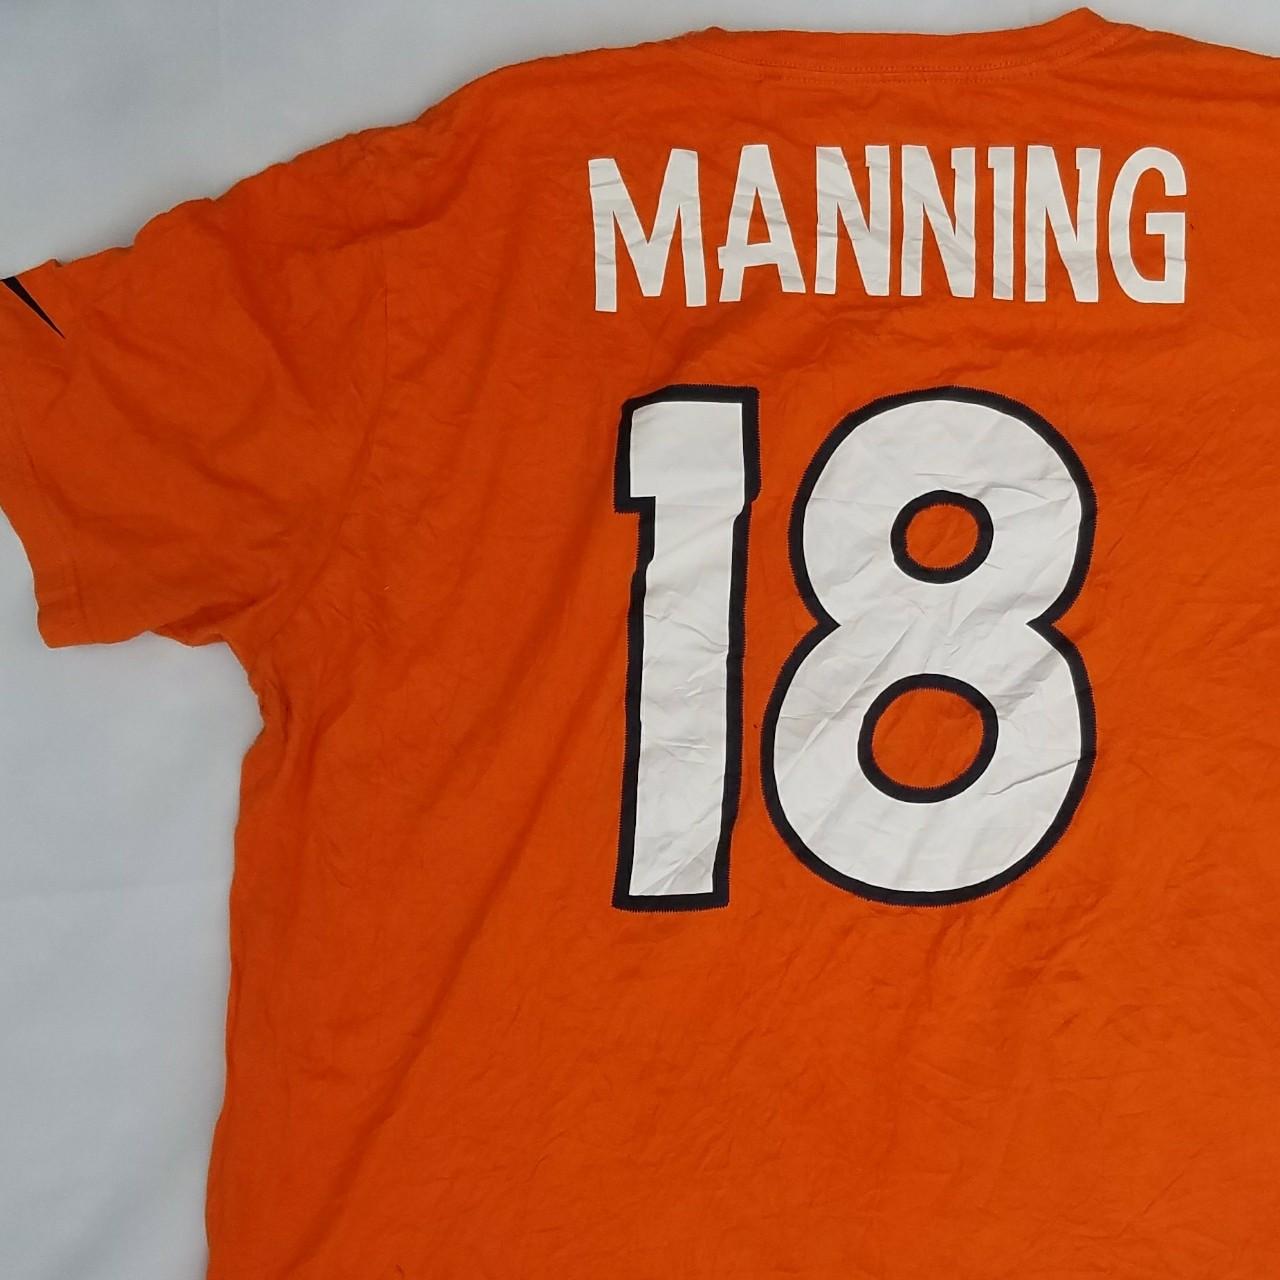 Vintage NFL Quarterback Peyton Manning Orange Nike... - Depop